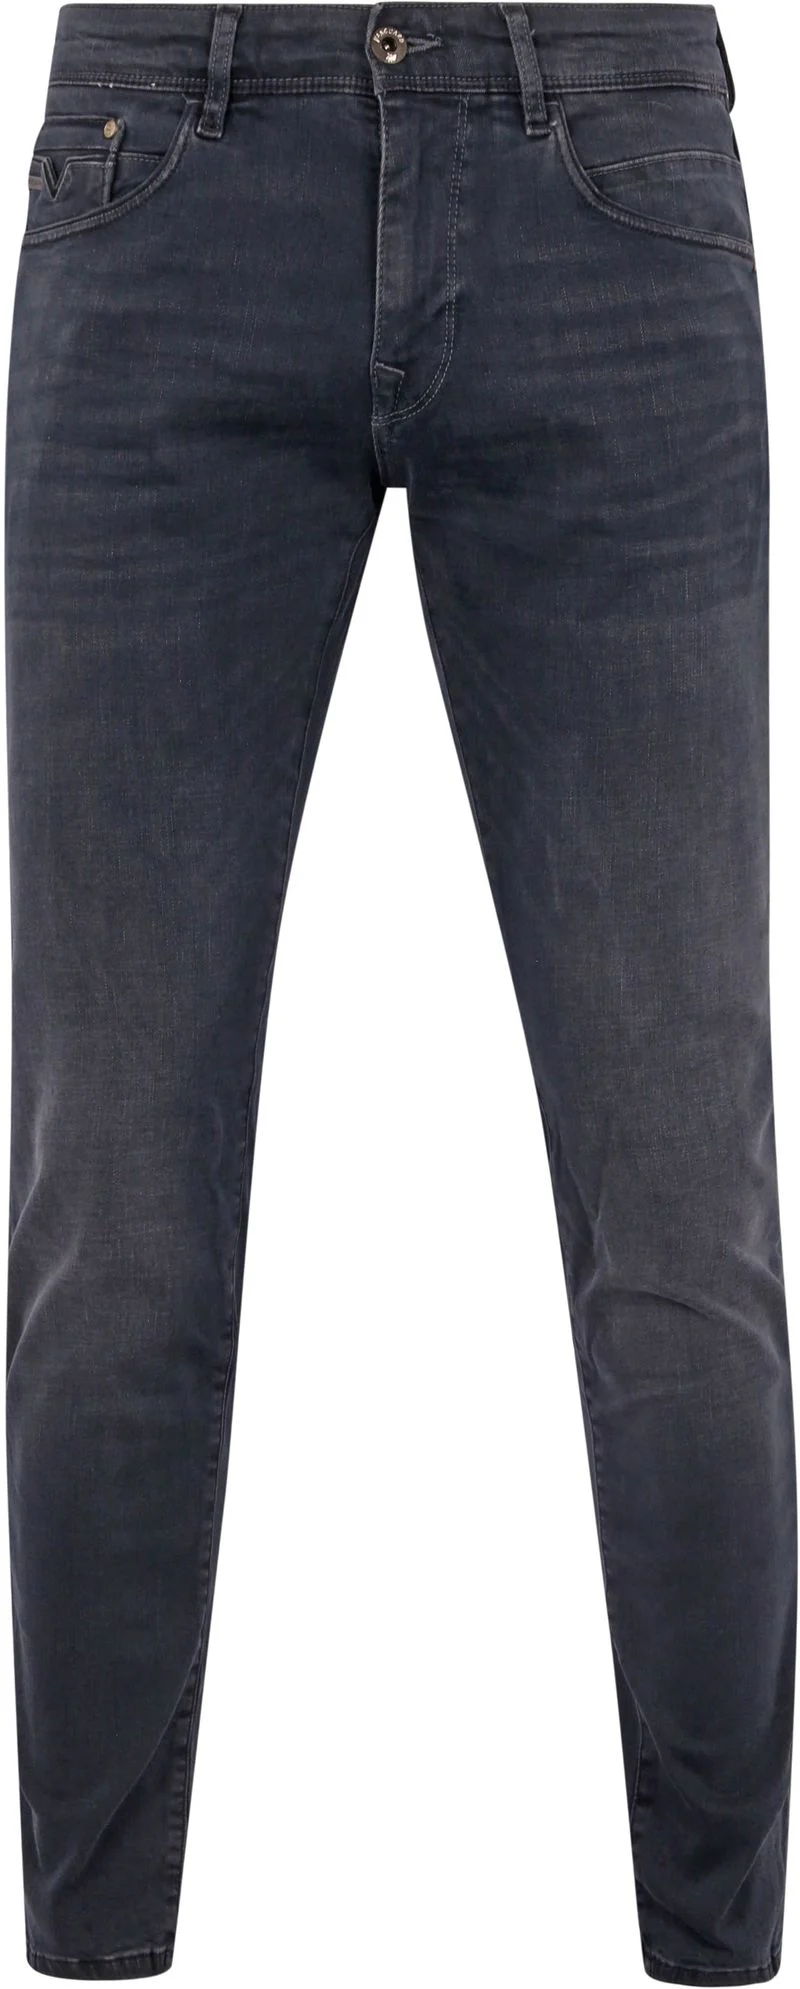 Vanguard Jeans V12 Rider Anthrazit ODB - Größe W 32 - L 34 günstig online kaufen